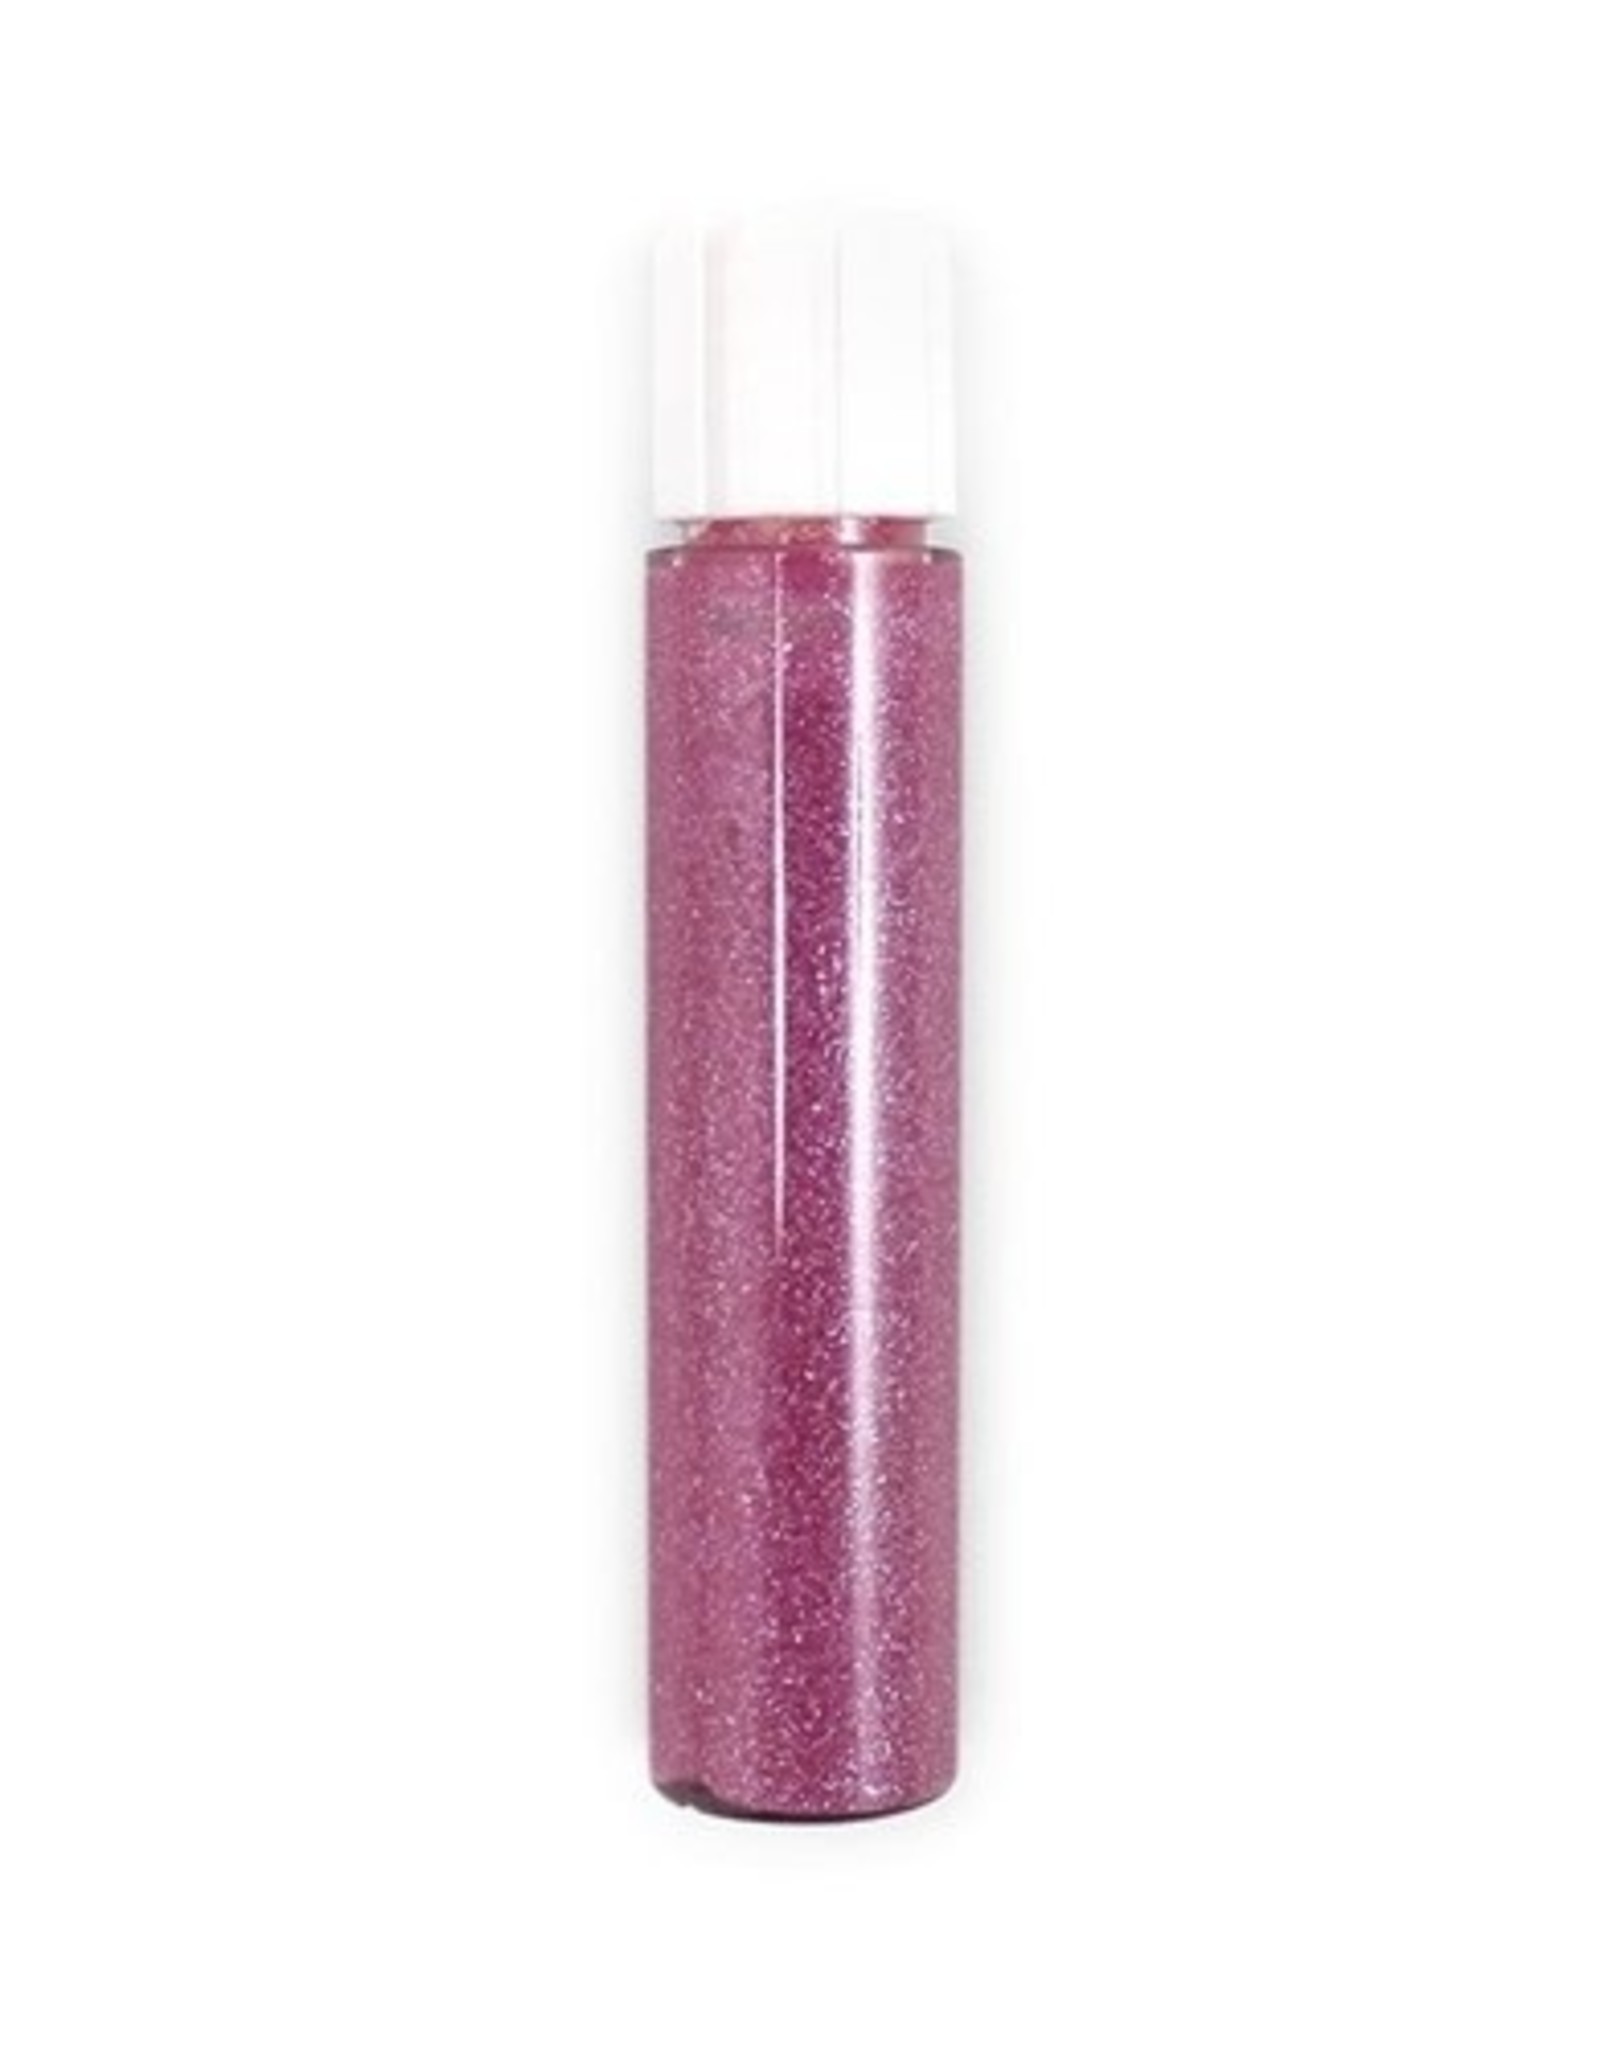 Zao ZAO Bamboo lipgloss refill 011 (Pink) 3.8 ml